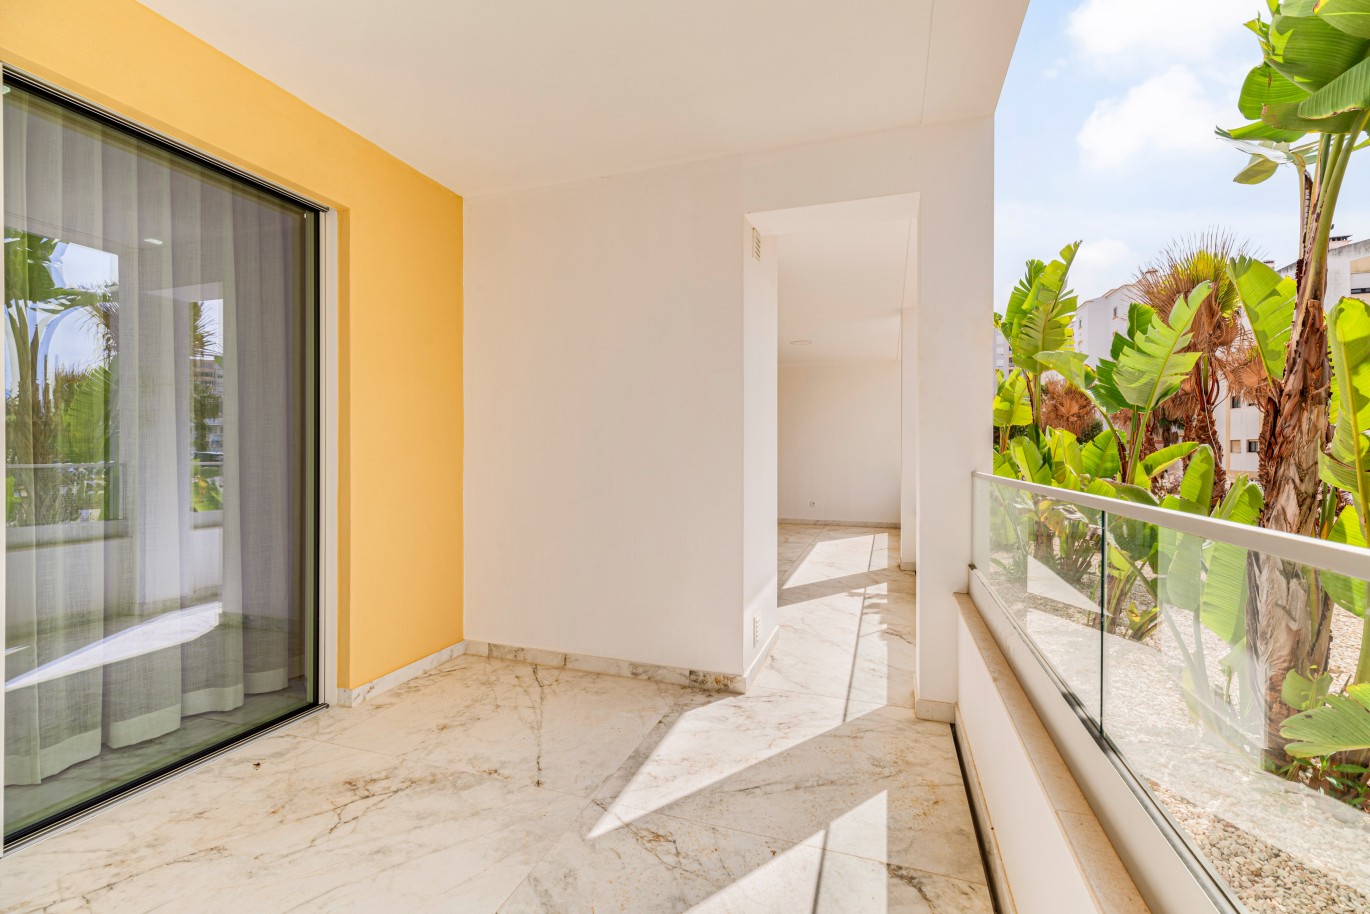 Verkauf einer Wohnung im Bau, mit Terrasse, Lagos, Algarve, Portugal_238178